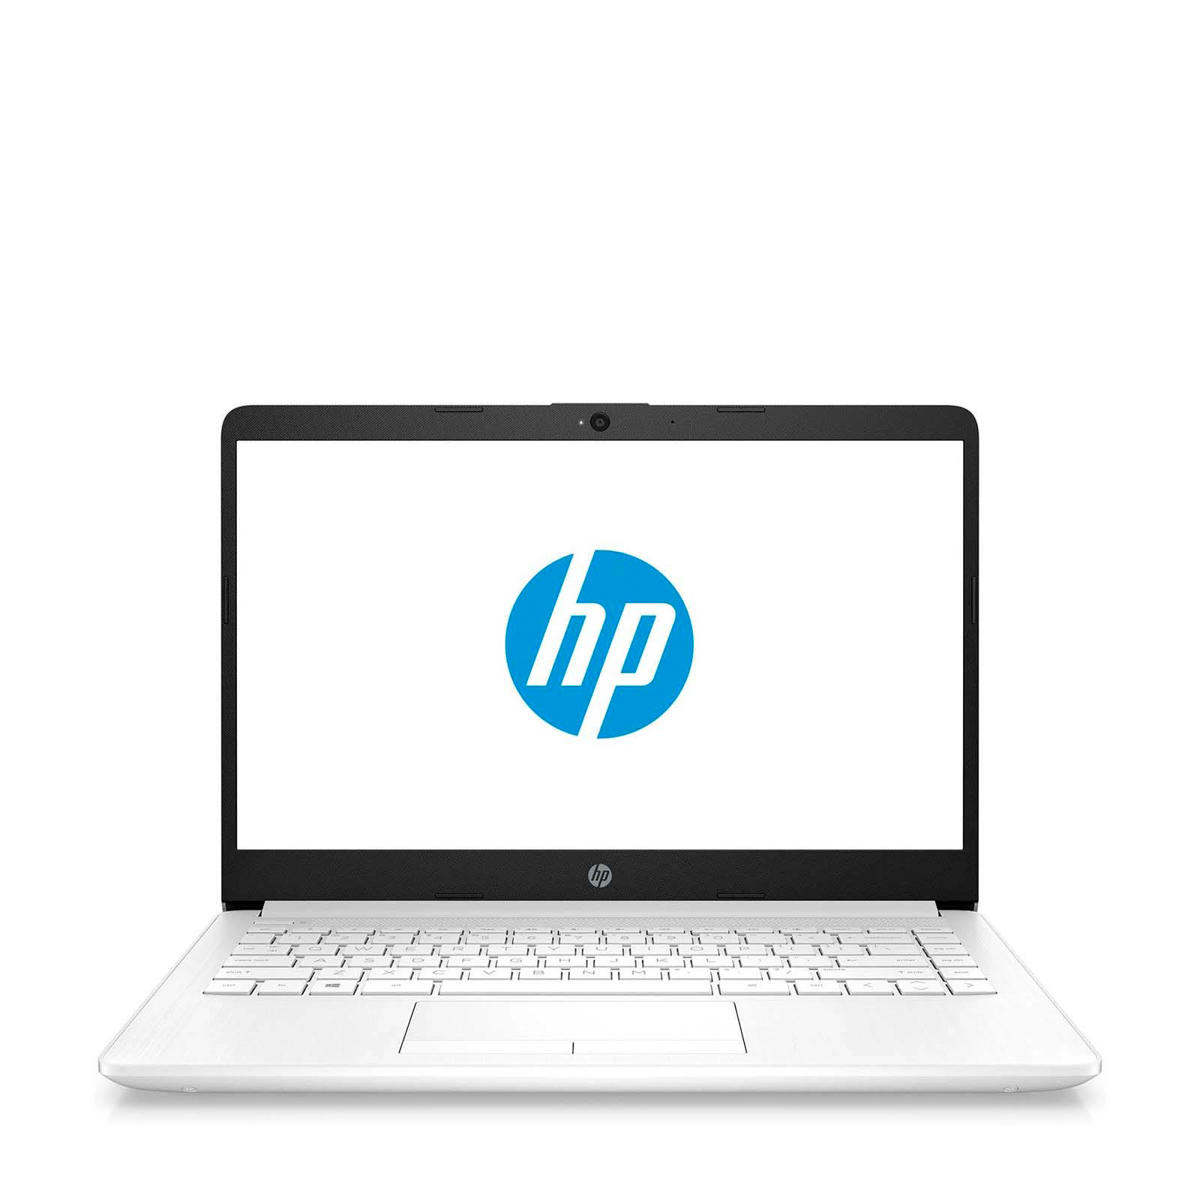 muis of rat meerderheid spreker HP laptop - 14 inch - 4GB/128GB | wehkamp